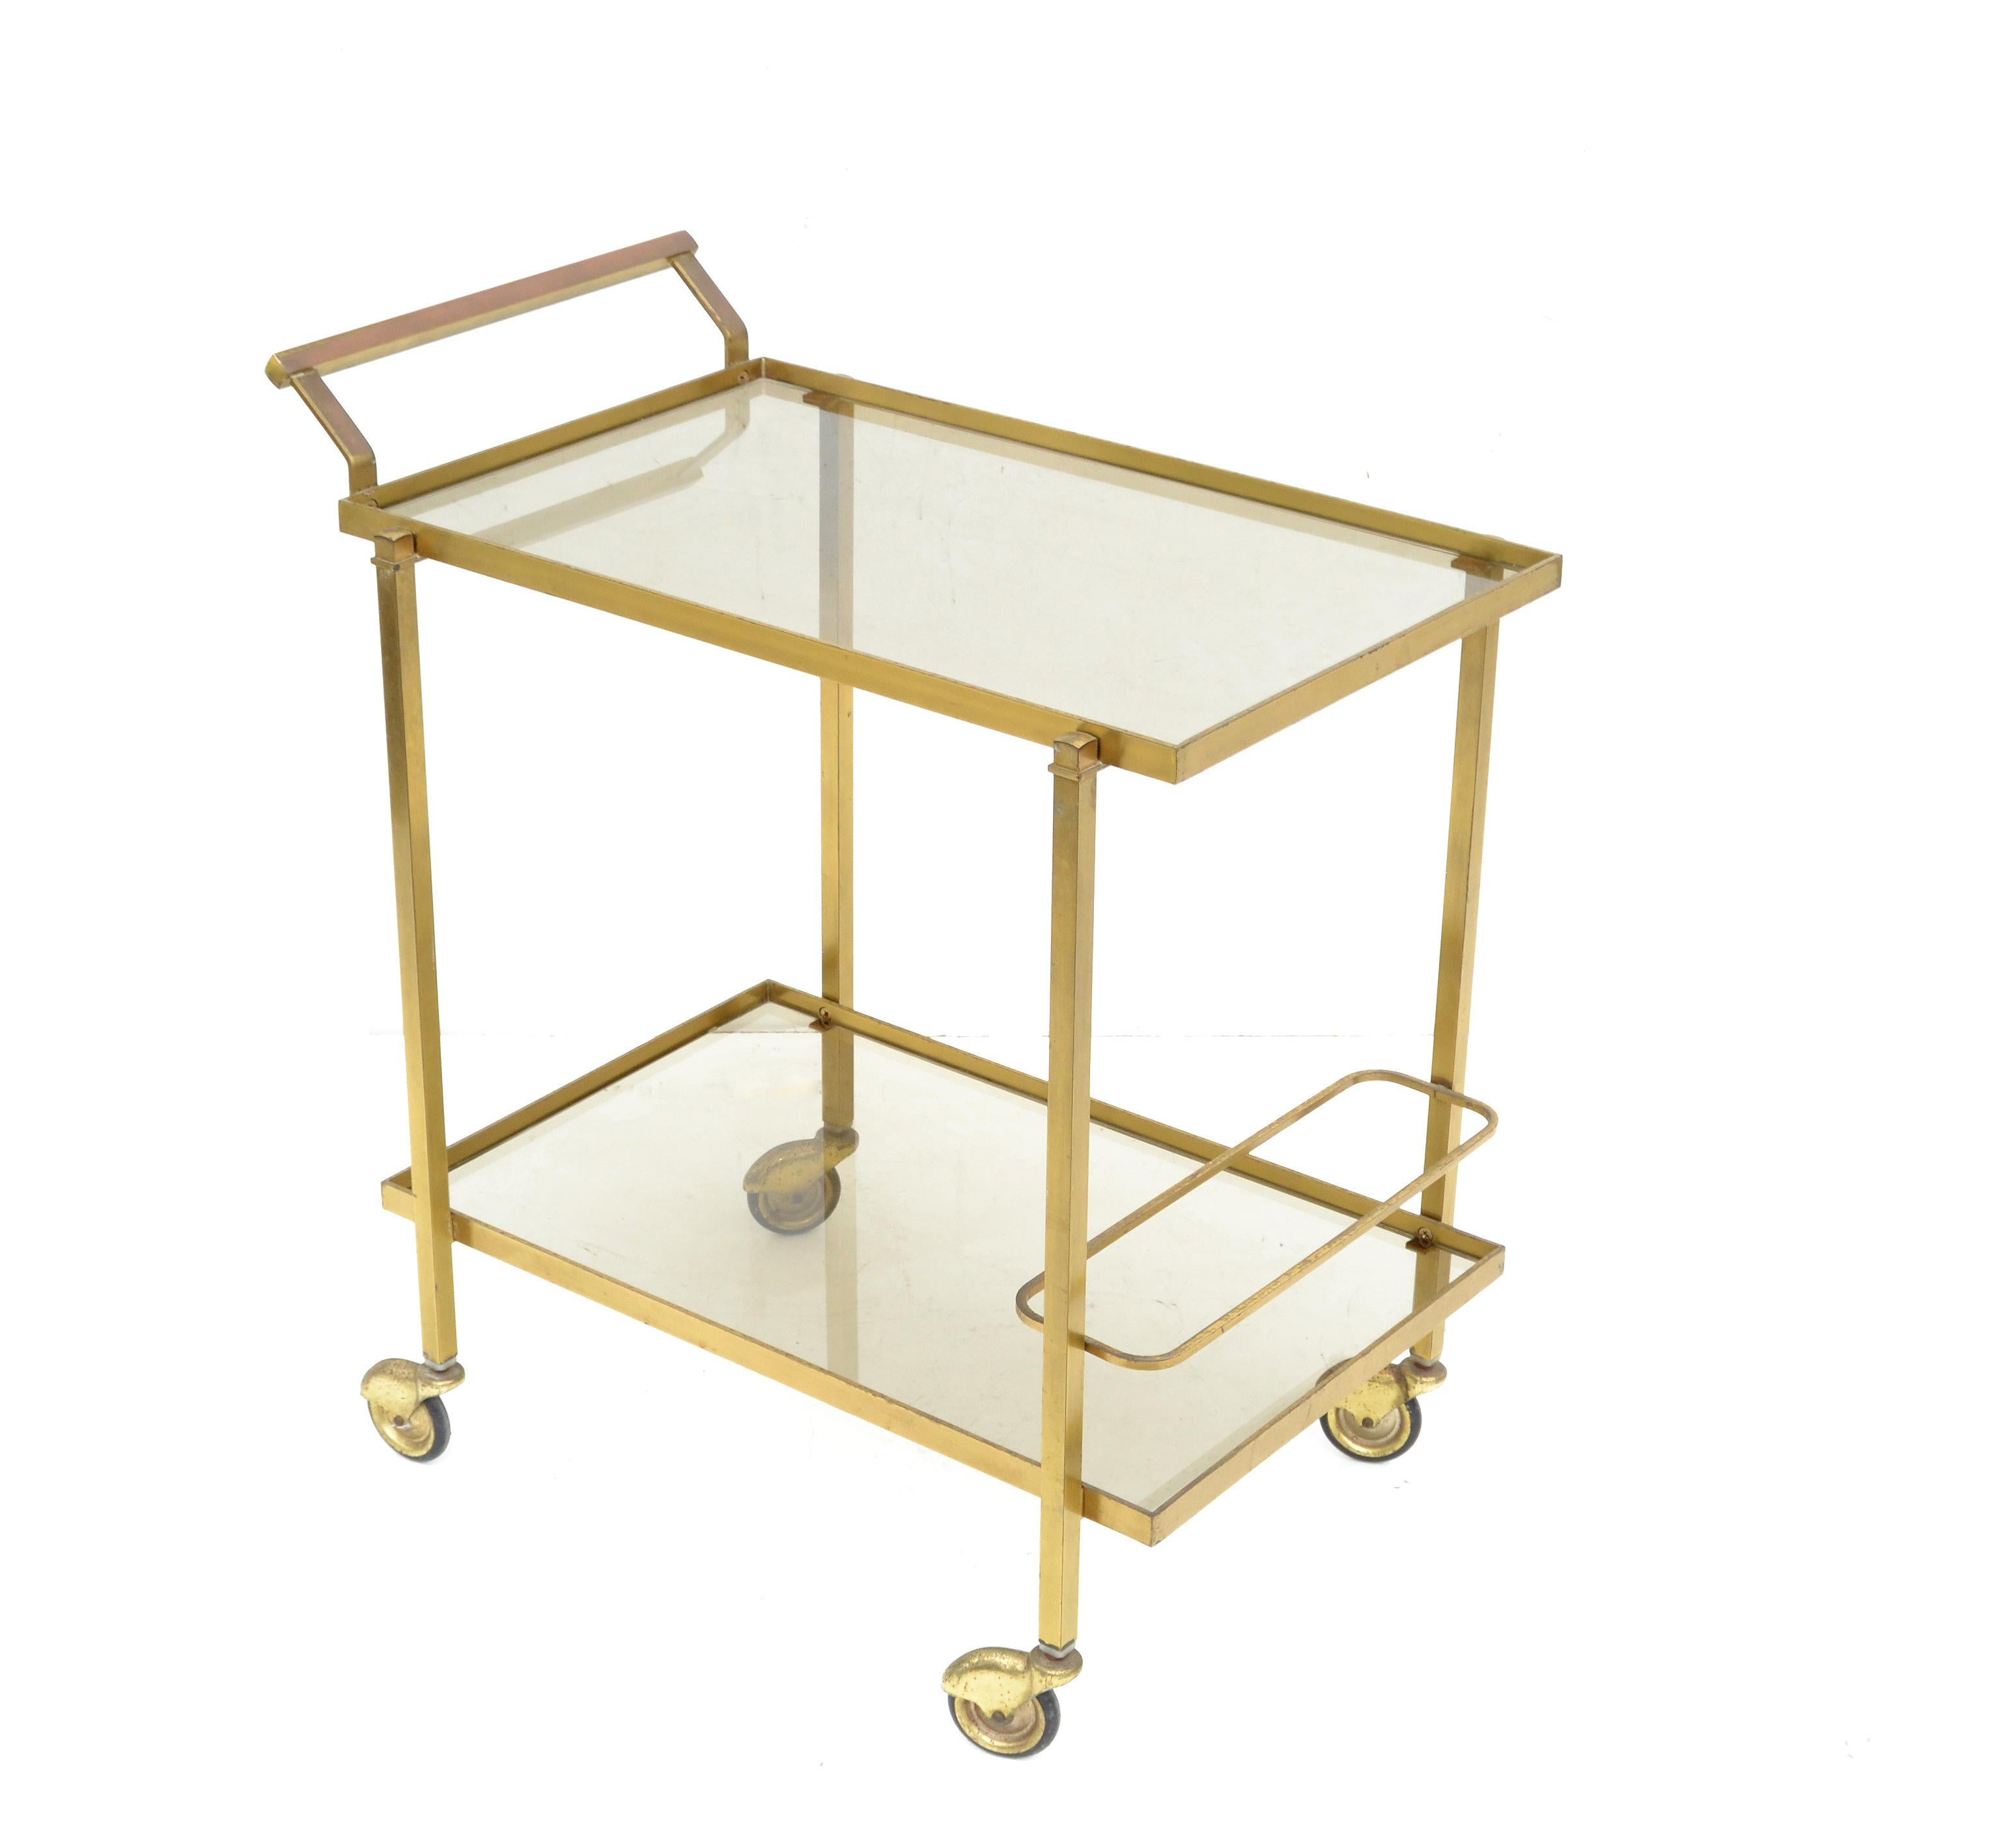 Guy Lefevre for Maison Jansen Bar Cart Brass & Glass French Mid-Century Modern 1